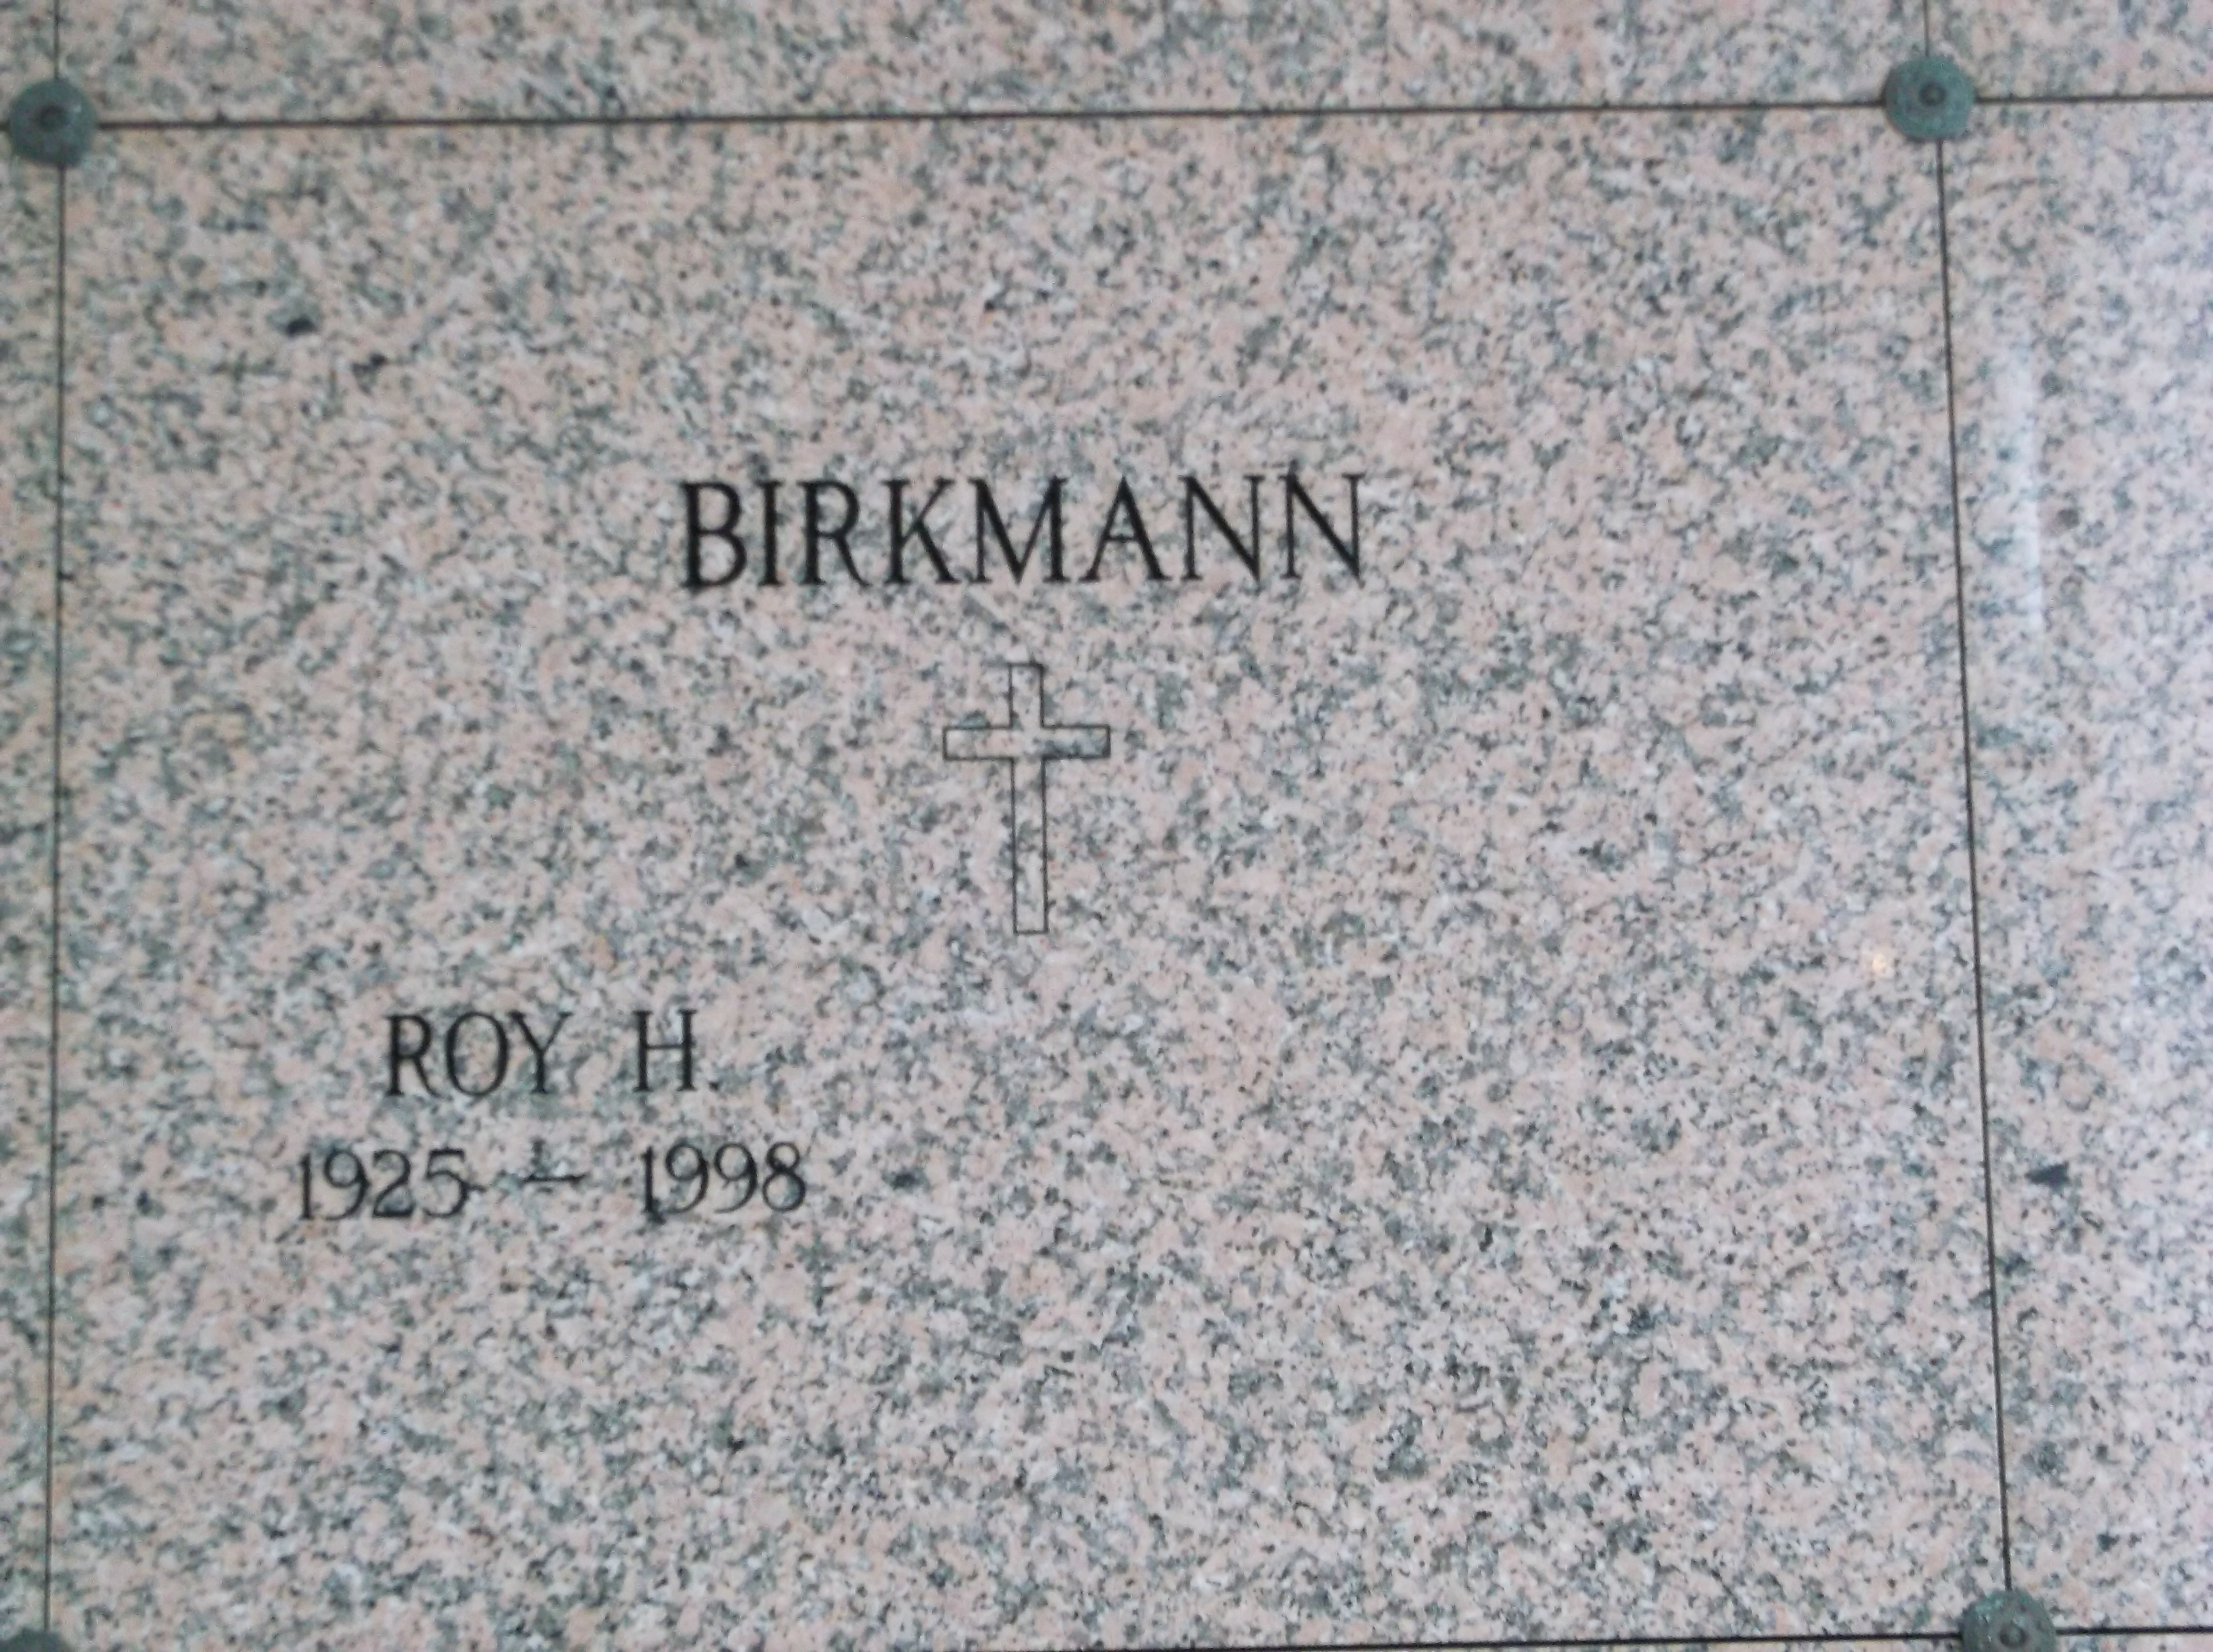 Roy H Birkmann